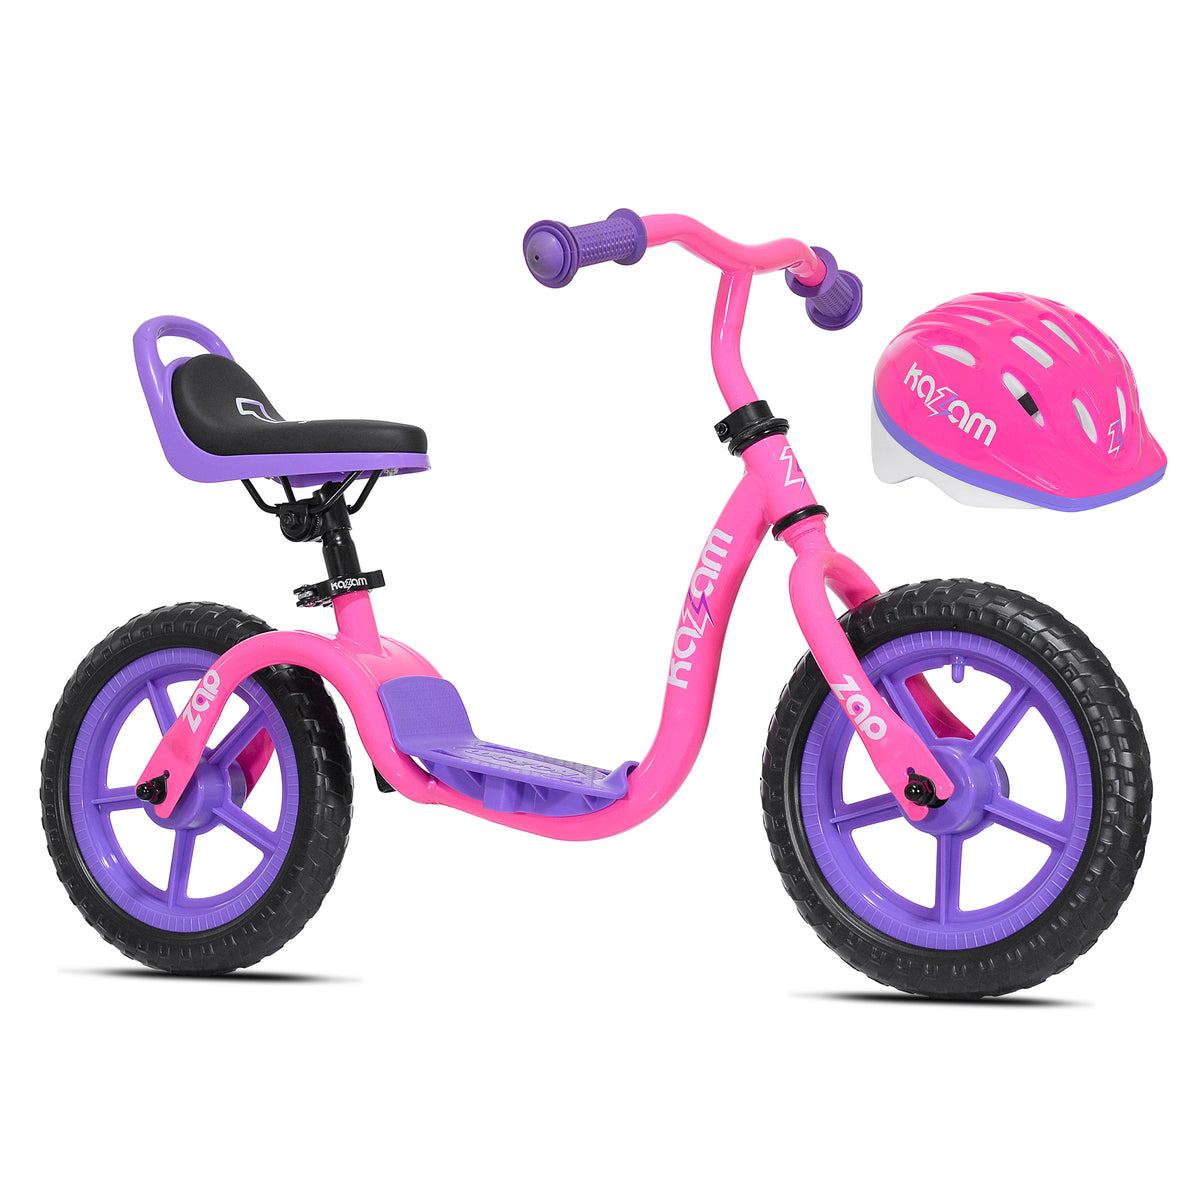 12" Kazam Zap Combo Pack | Balance Bike + Helmet for Kids Ages 2-4